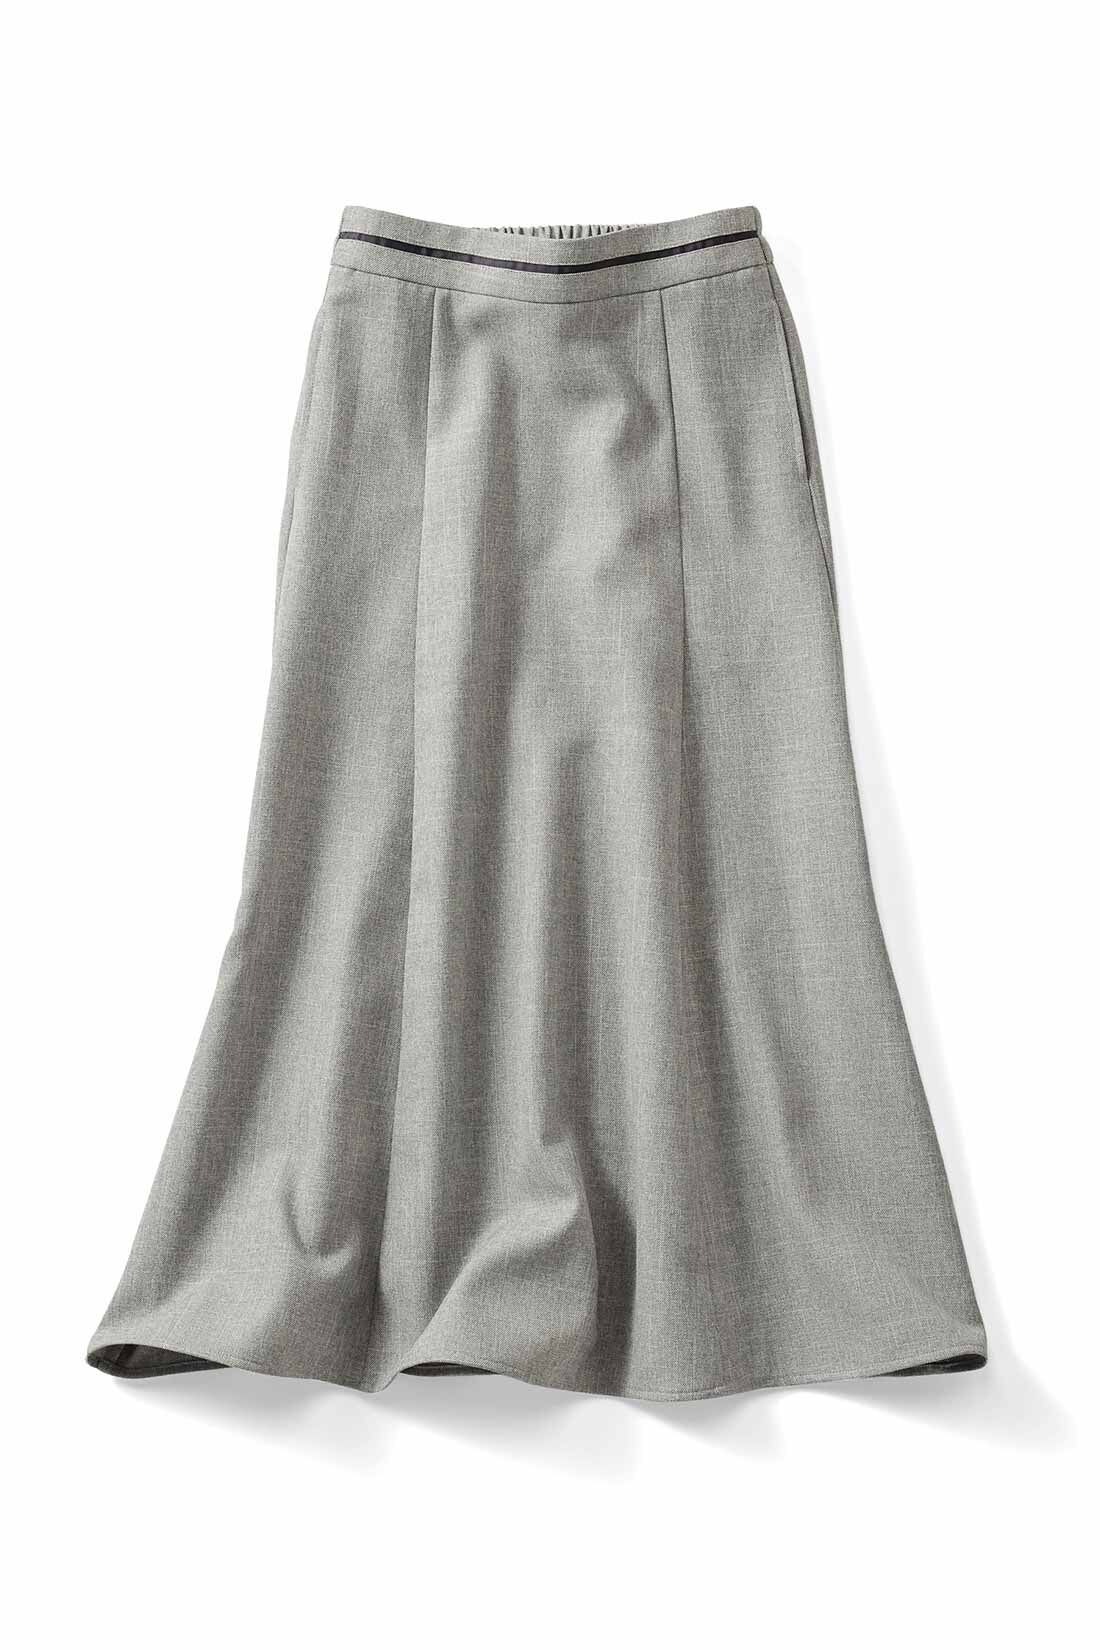 IEDIT|IEDIT[イディット]　シルエットが美しい UVカット機能のすっきり見えスカート|〈ライトグレー〉